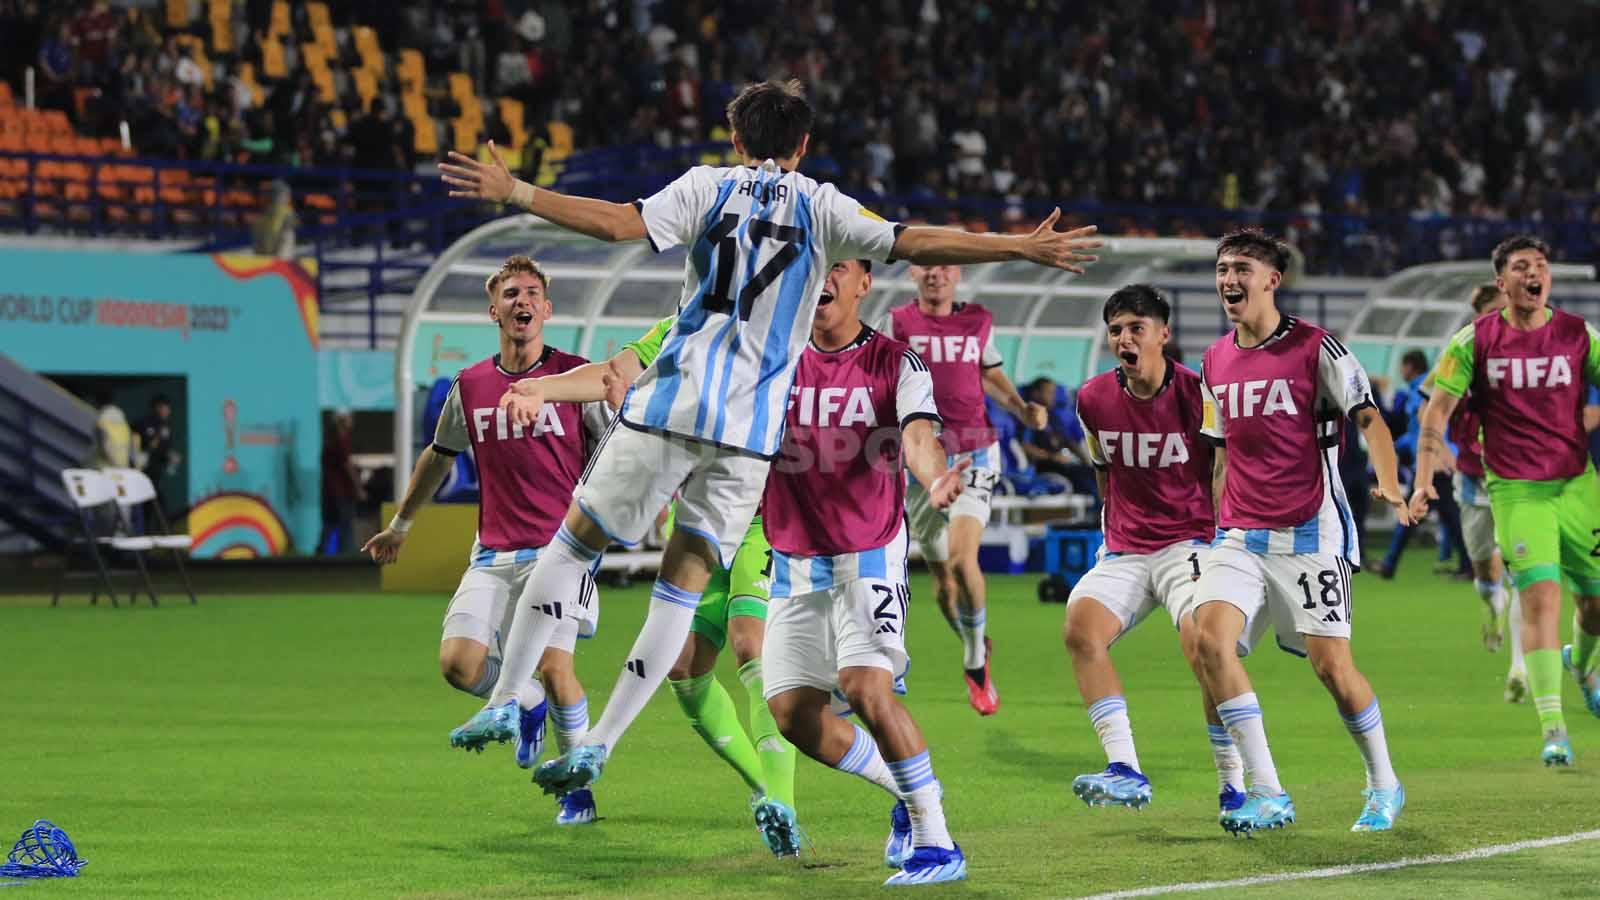 Gelandang Timnas Argentina U-17, Valentino Ucuna, melakukan selebrasi usai mencetak gol ke gawang Timnas Jepang U-17.